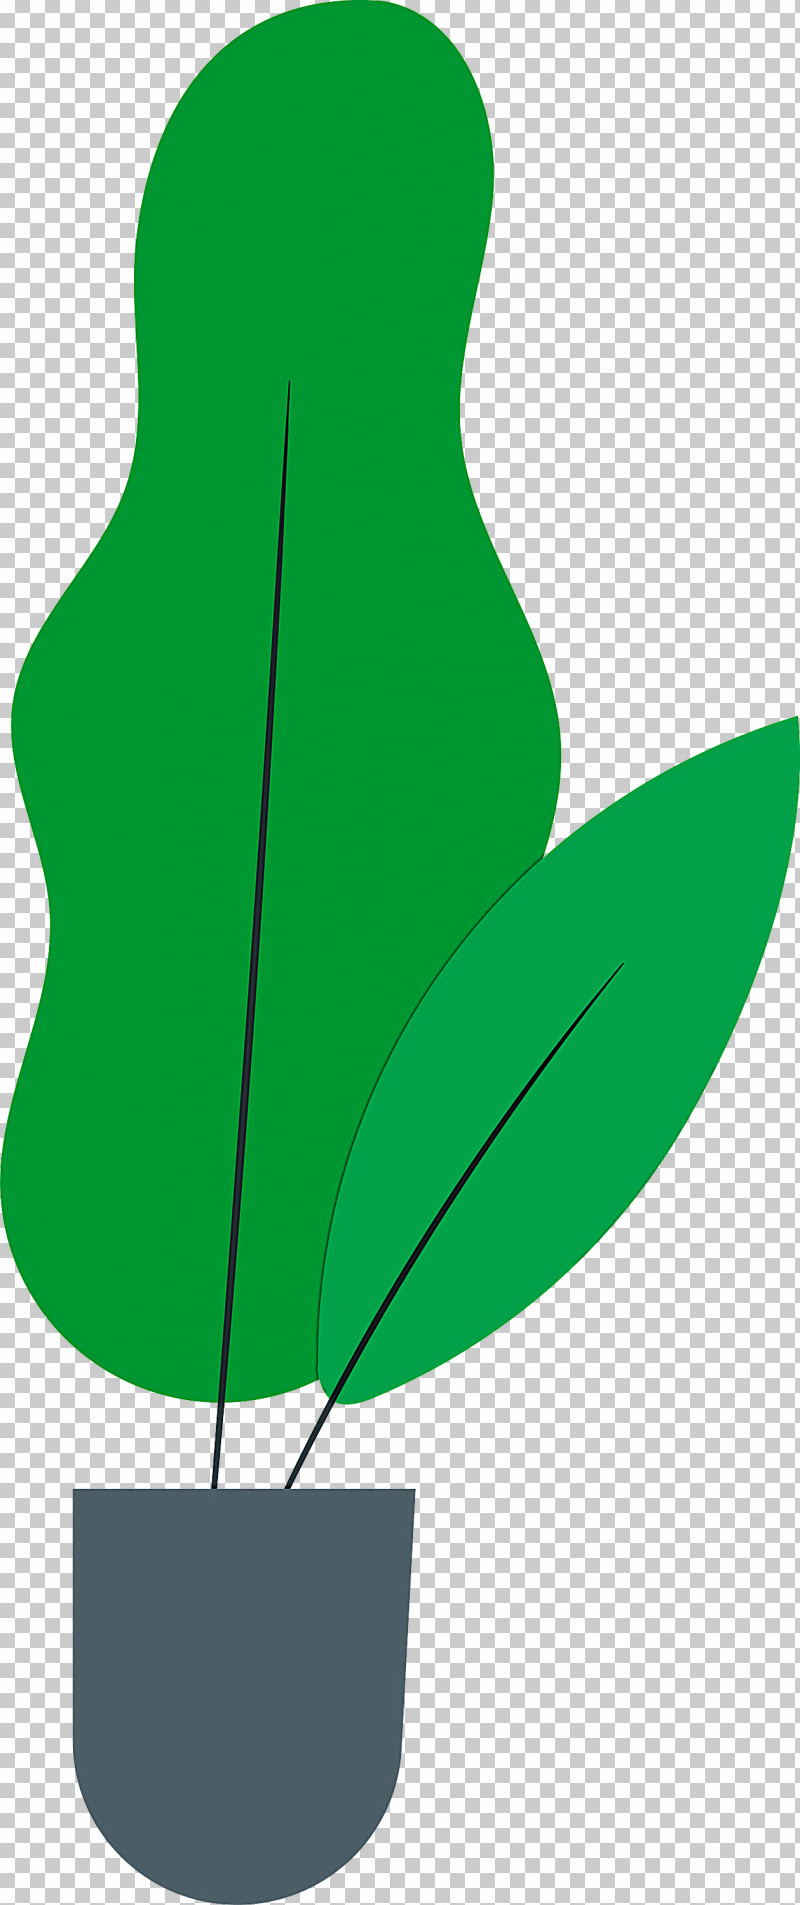 Leaf Plant Stem Flower Branch Petal PNG, Clipart, Biology, Branch, Fig Trees, Flower, Green Free PNG Download